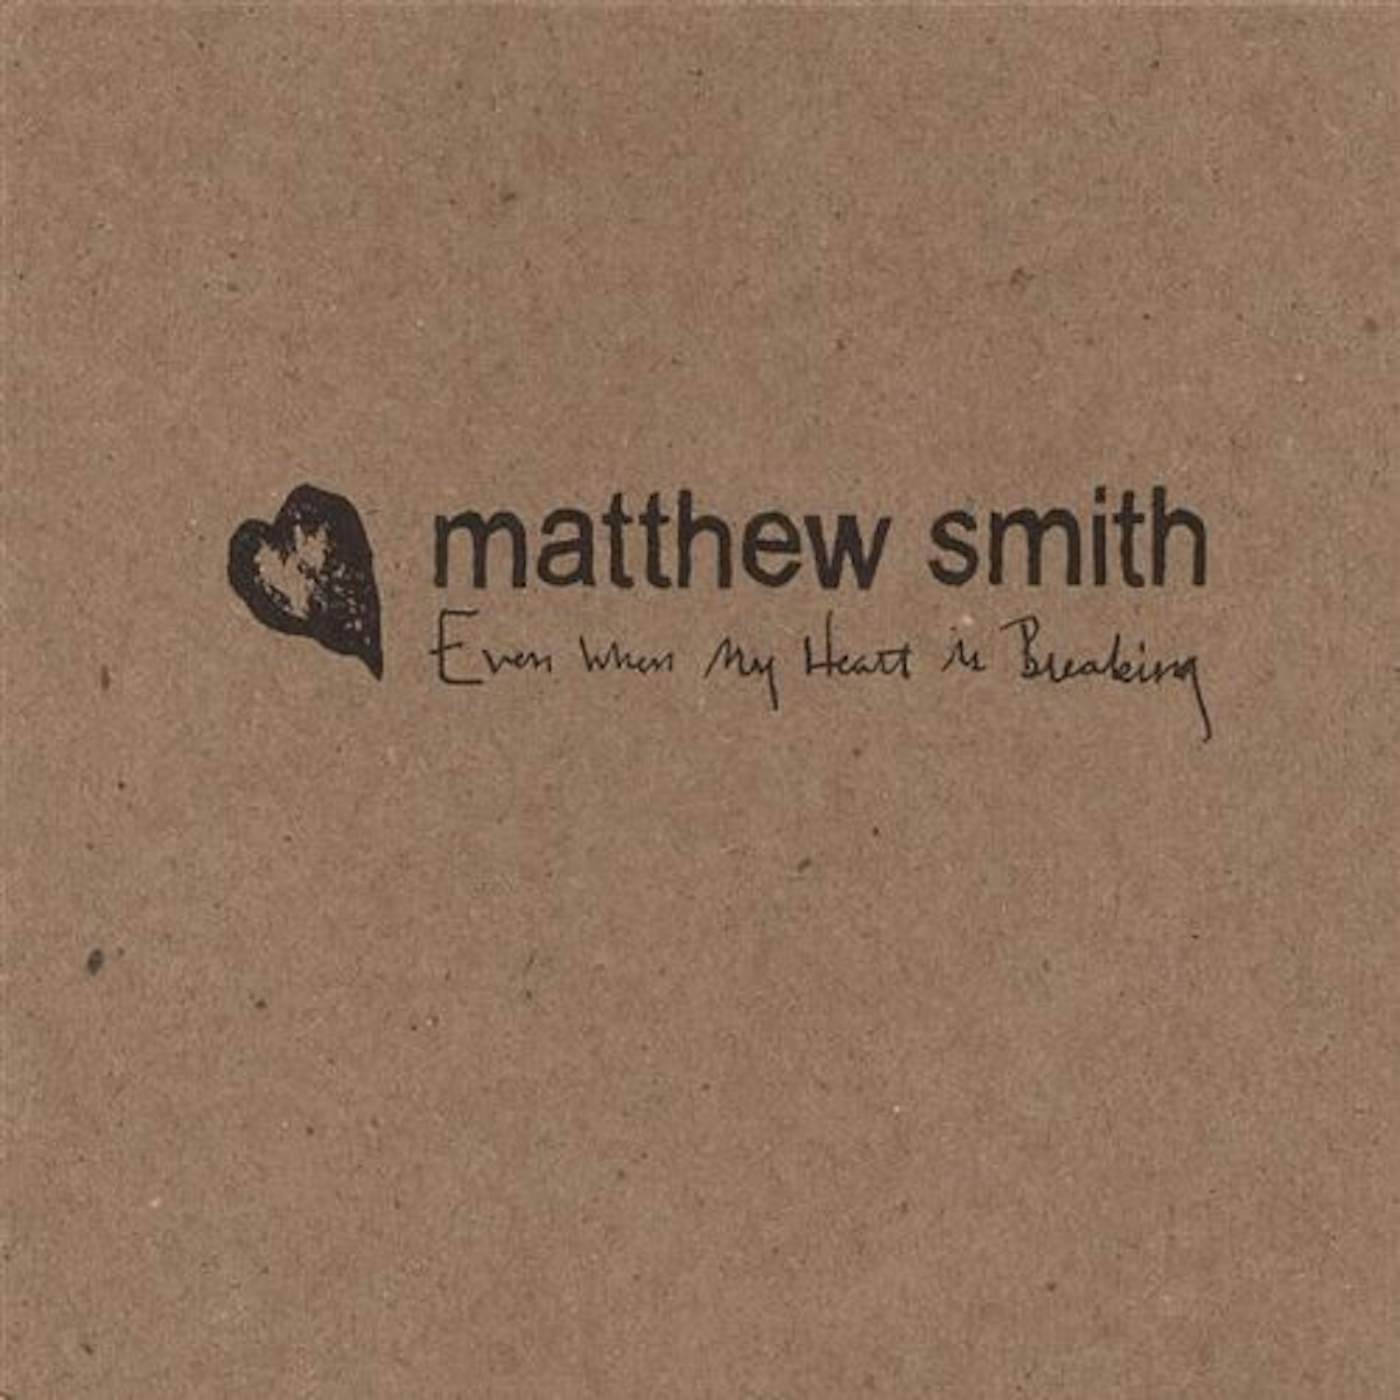 Matthew Smith EVEN WHEN MY HEART IS BREAKING CD